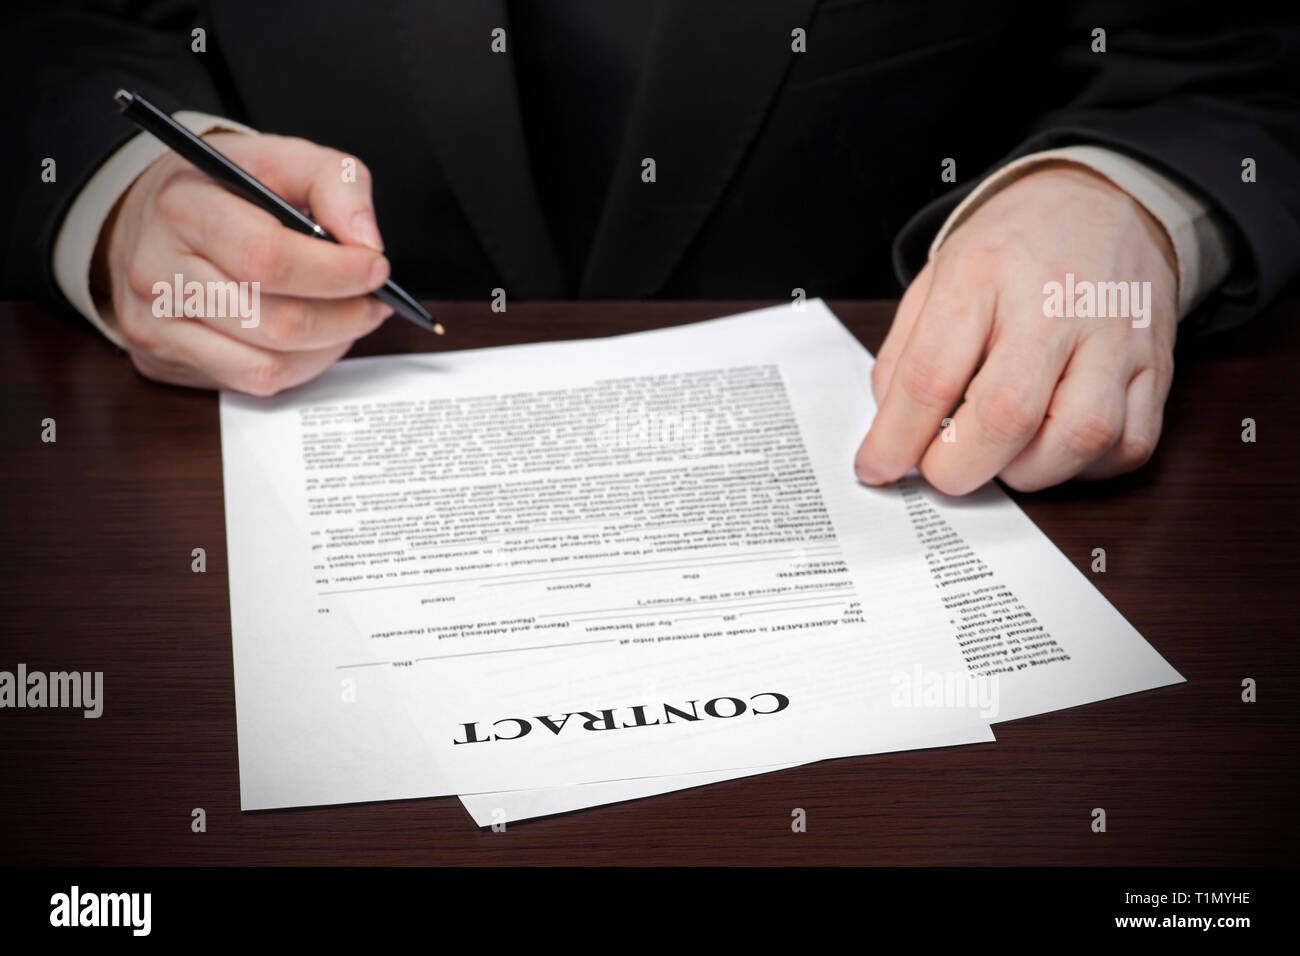 Persona de negocios llenar el documento, imagen foco selectivo en firmar un contrato Foto de stock